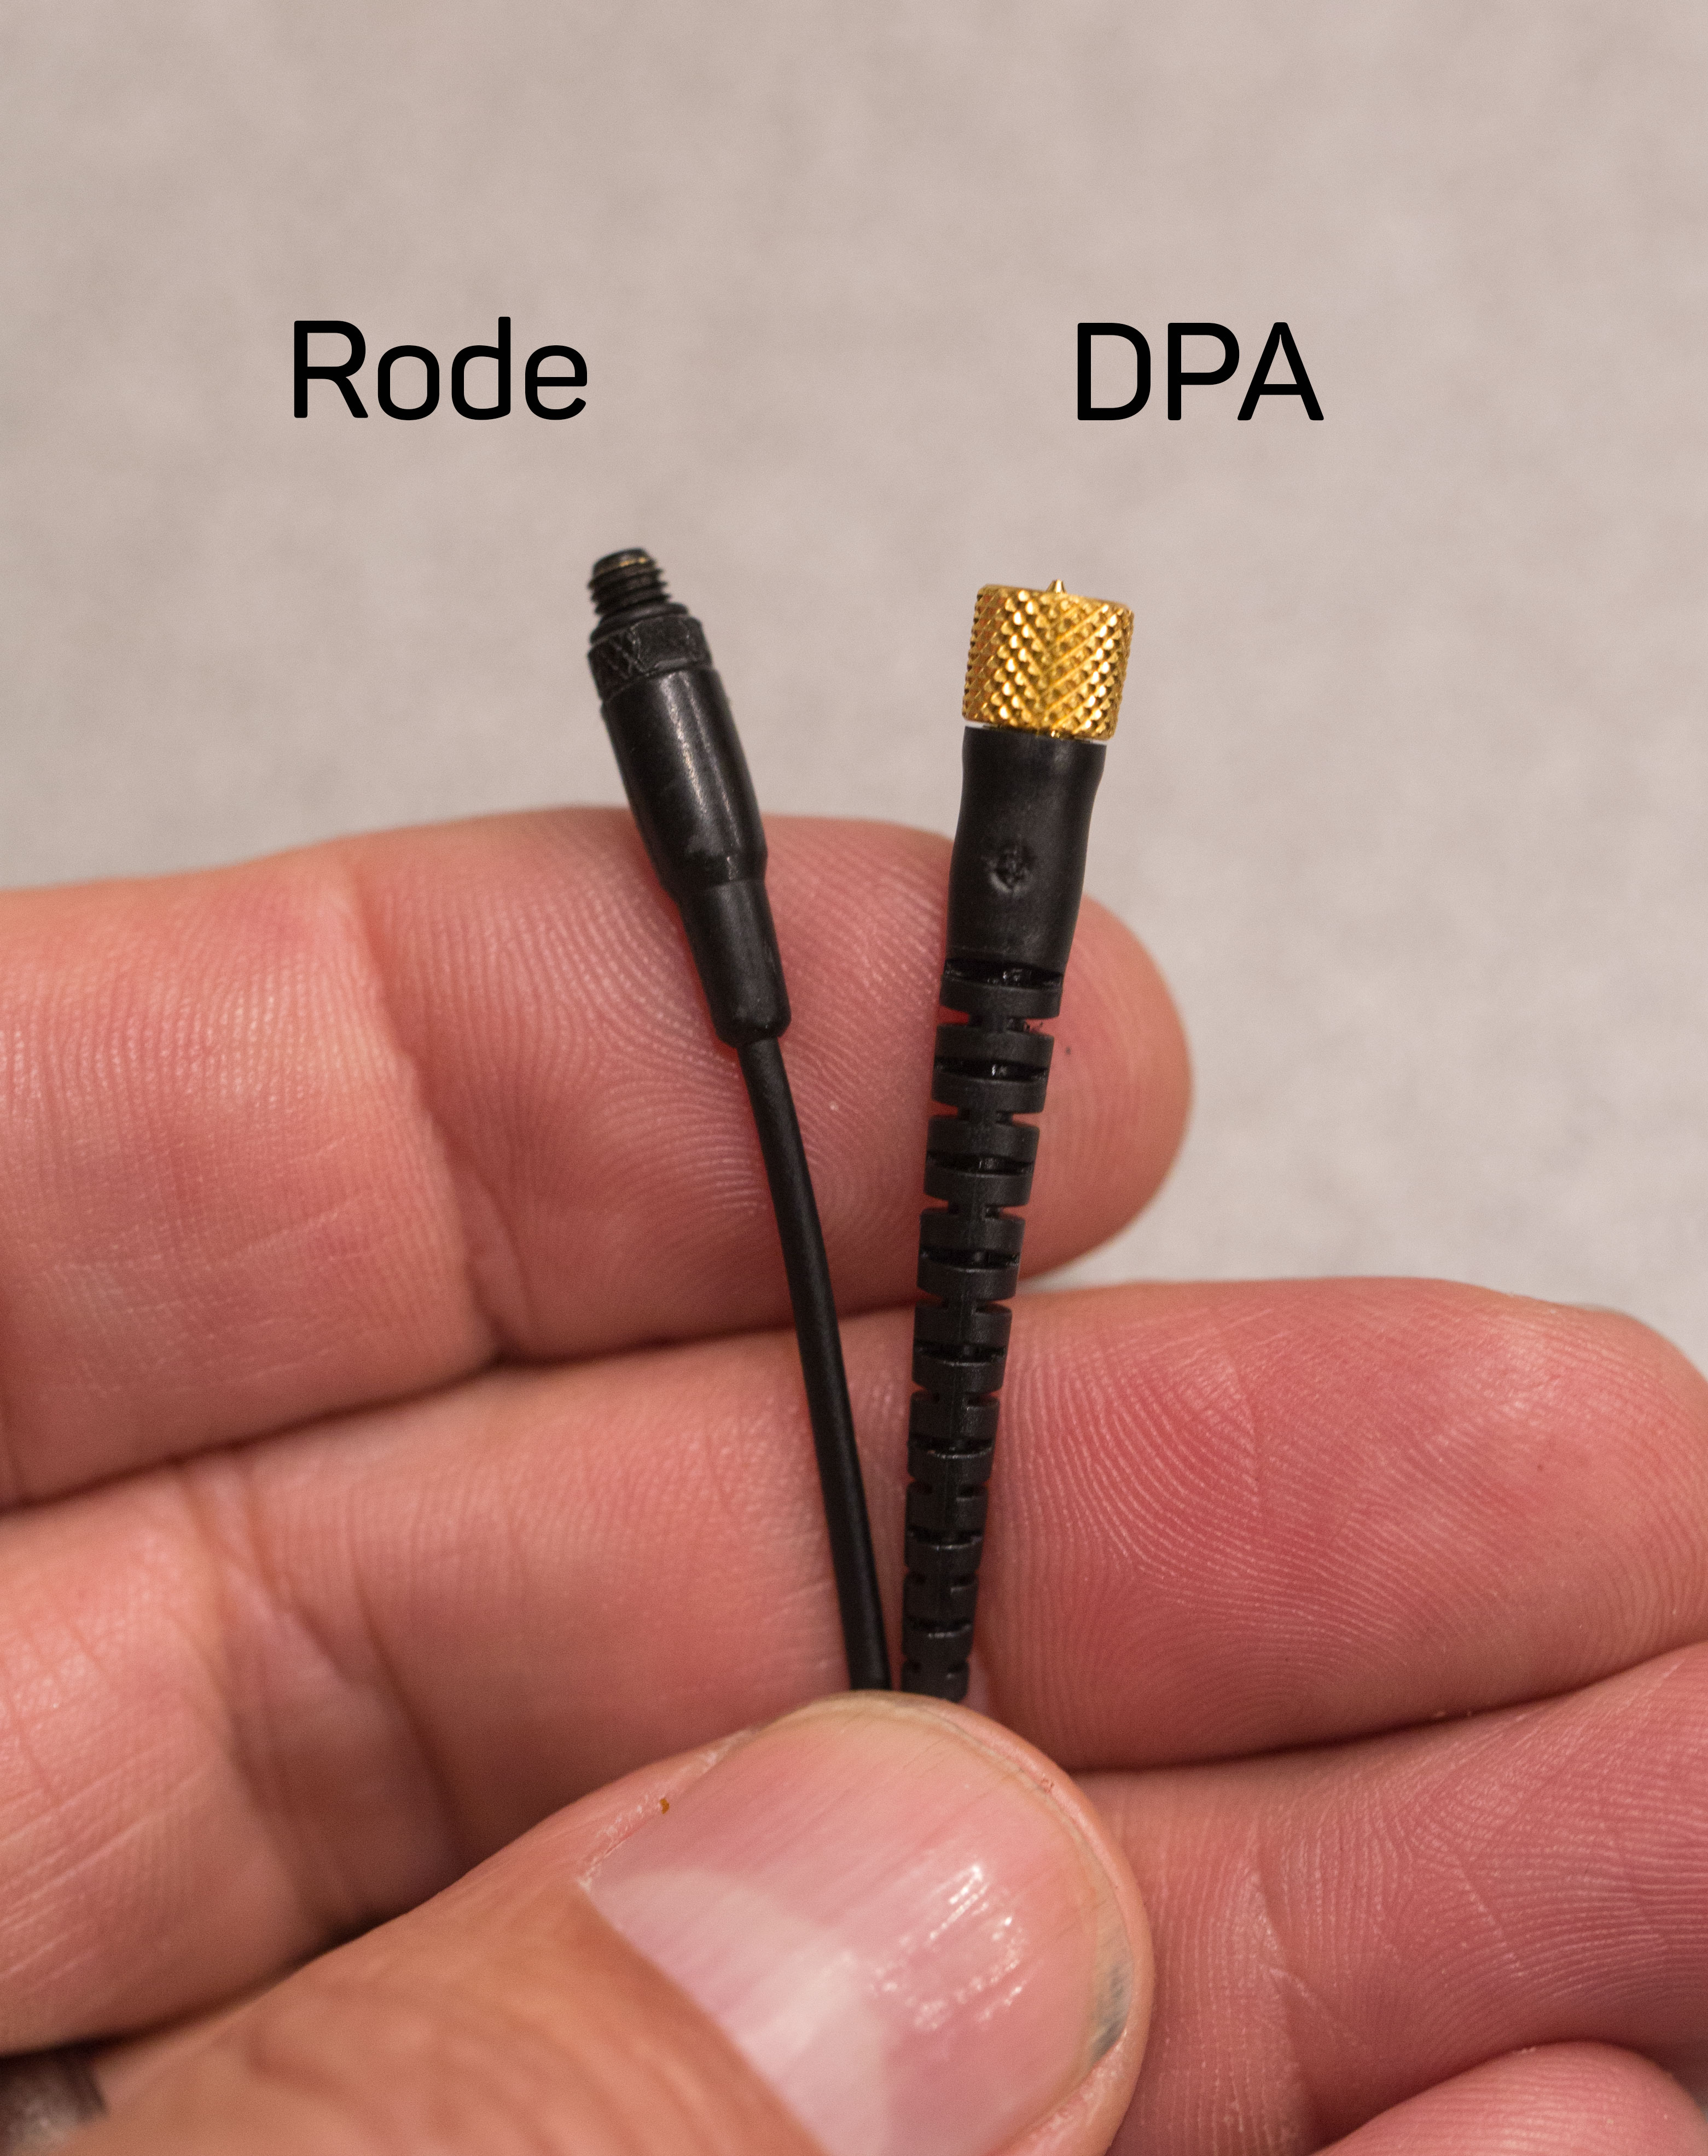 Rode vs. DPA micro dot connectors